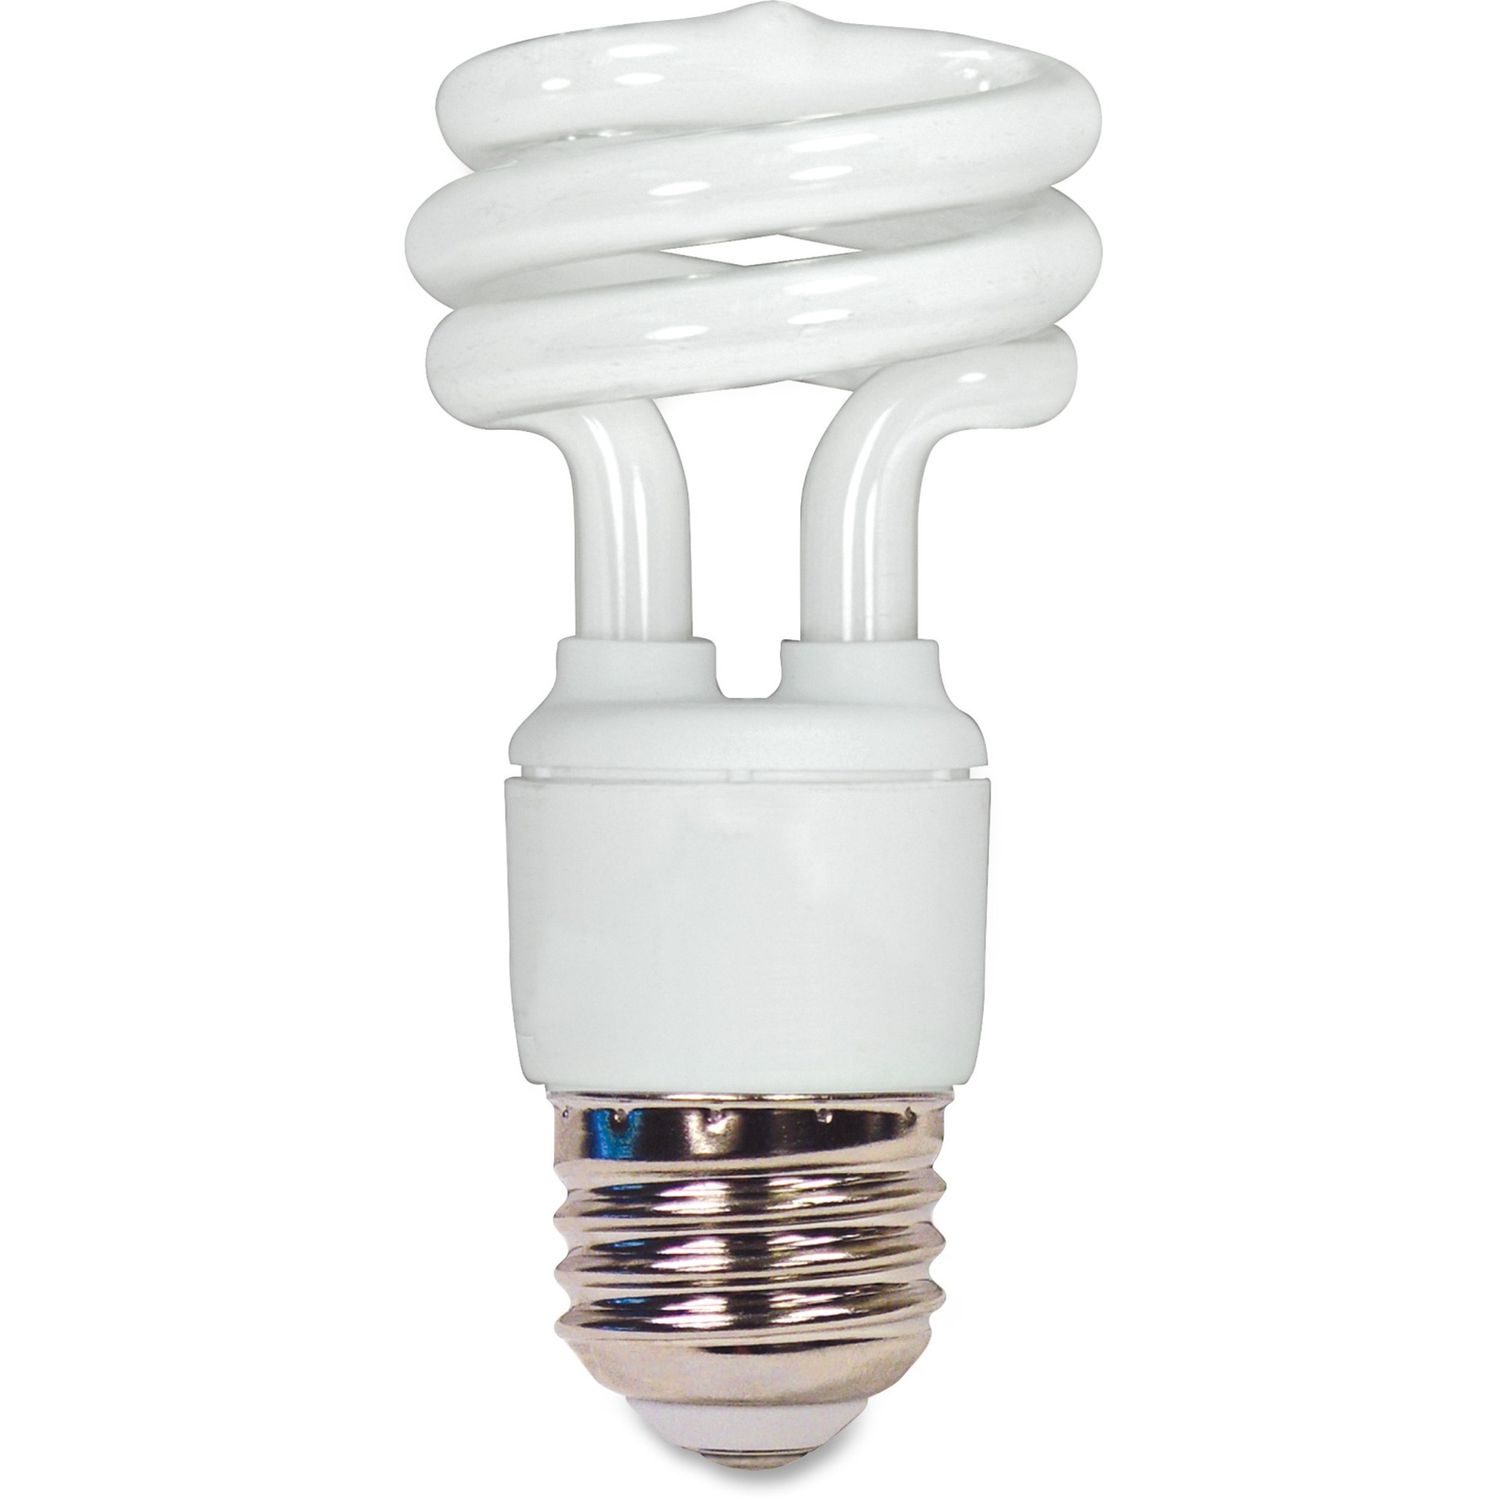 T2 11-watt Mini Spiral CFL Bulb 11 W, 40 W Incandescent Equivalent Wattage, 120 V AC, 730 lm, Spiral, T2 Size, Warm White Light Color, E26 Base, 10000 Hour, 4400.3°F (2426.8°C) Color Temperature